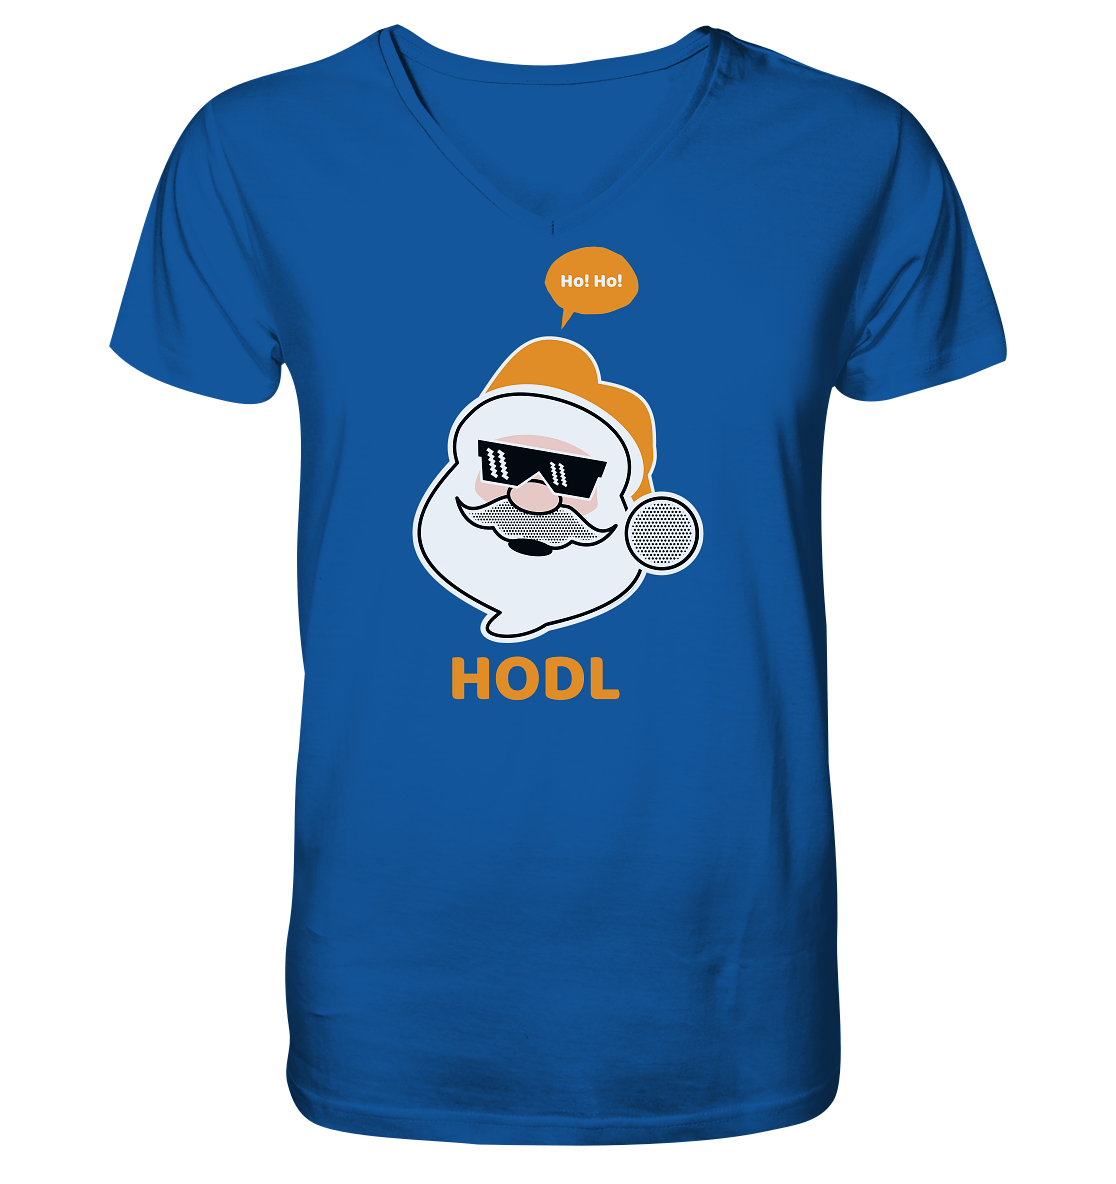 Bitcoin "Ho Ho Hodl" - Mens Organic V-Neck Shirt